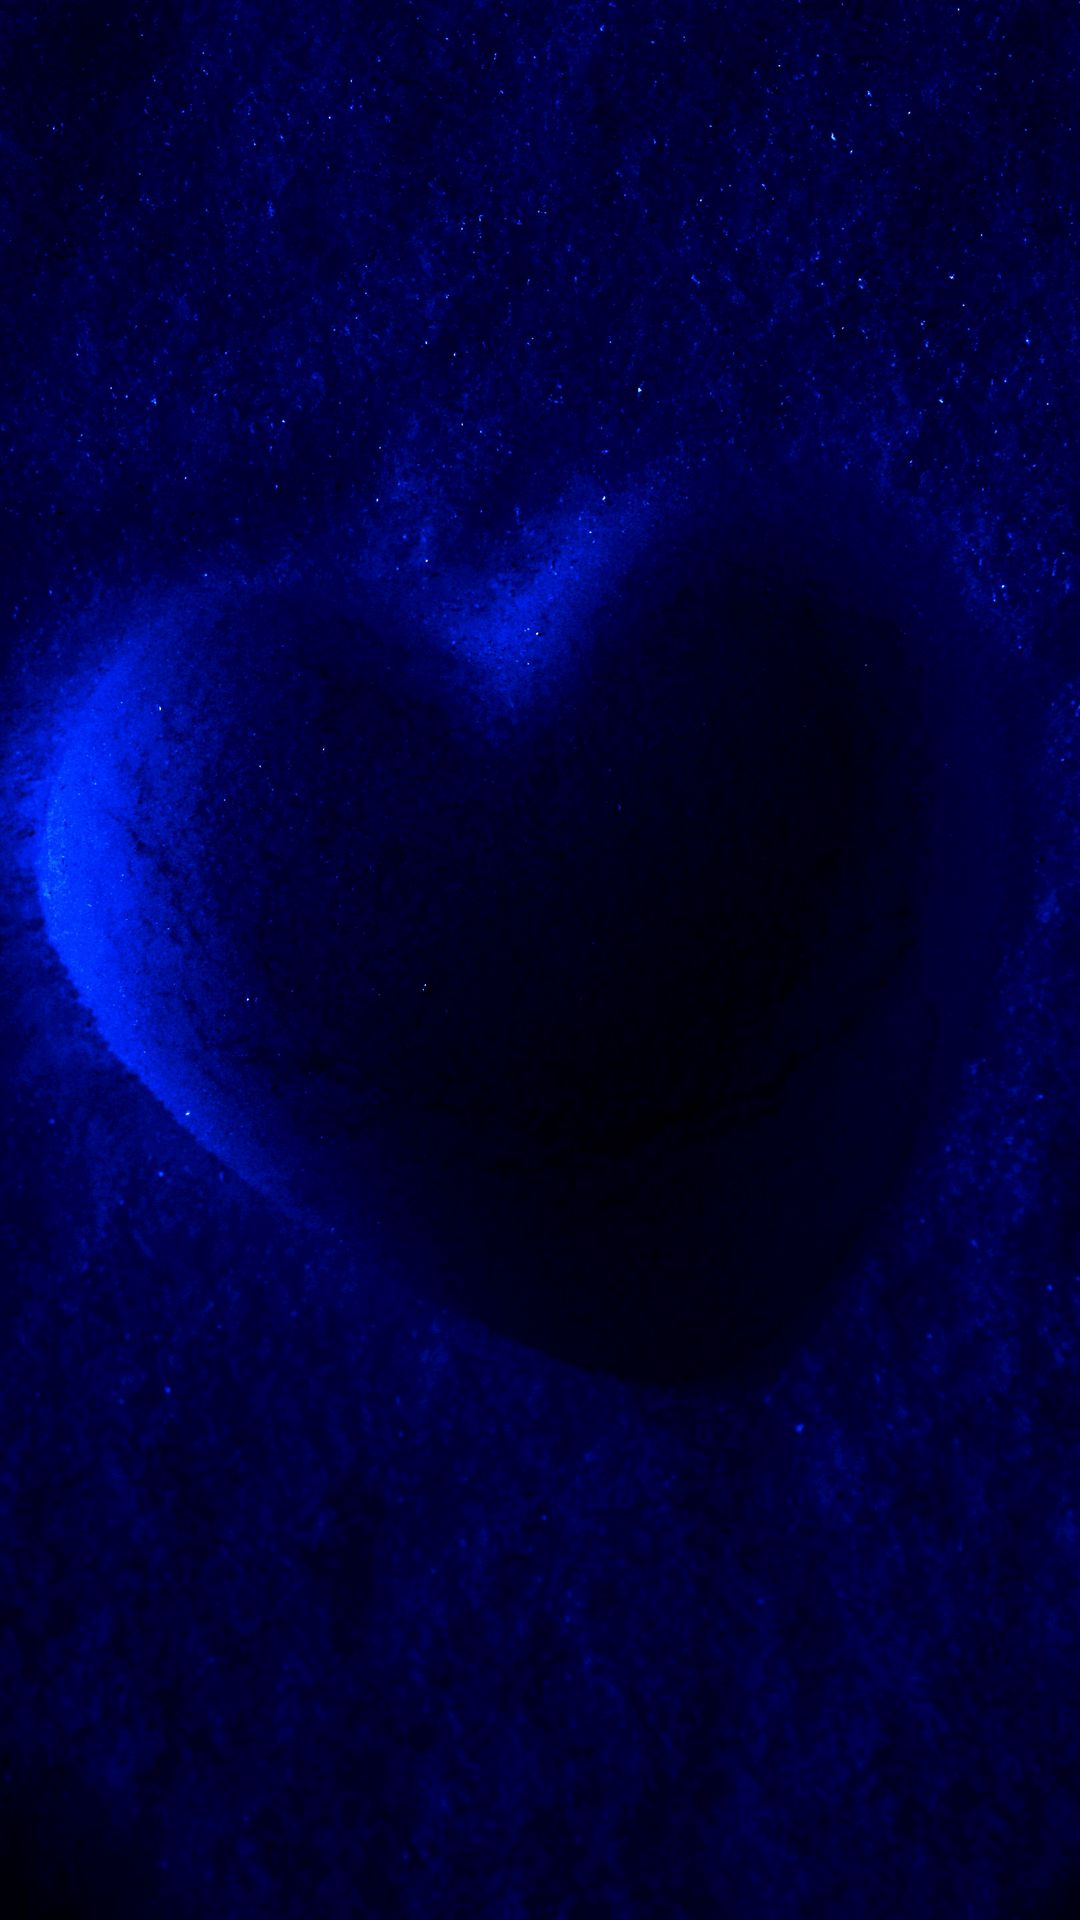 Red heart pattern wallpaper on light blue  Stock Illustration  73416352  PIXTA